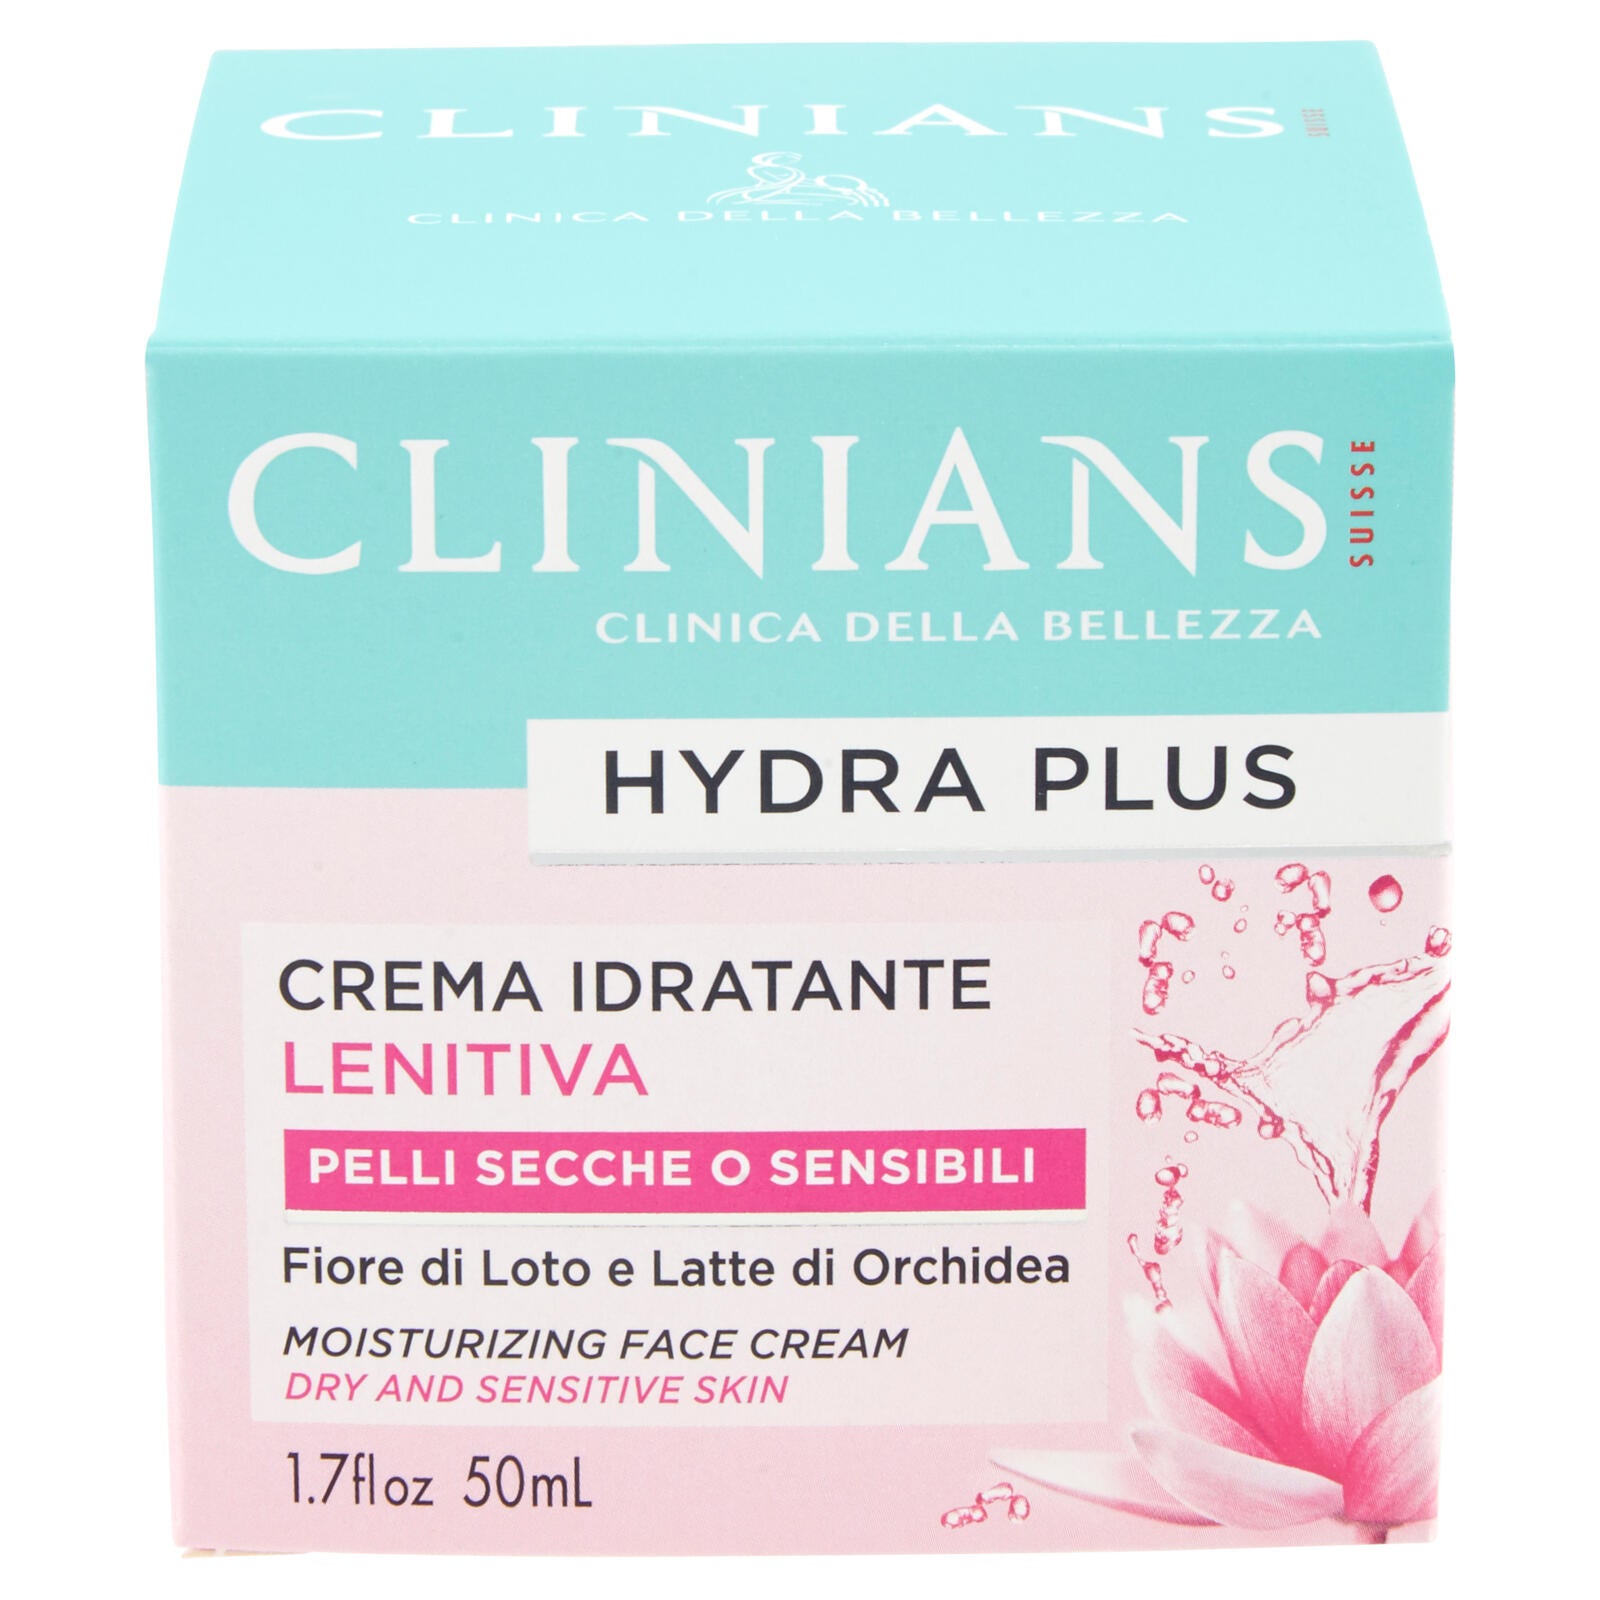 Clinians Hydra Plus Crema Idratante Lenitiva Pelli Secche o Sensibili 50 mL